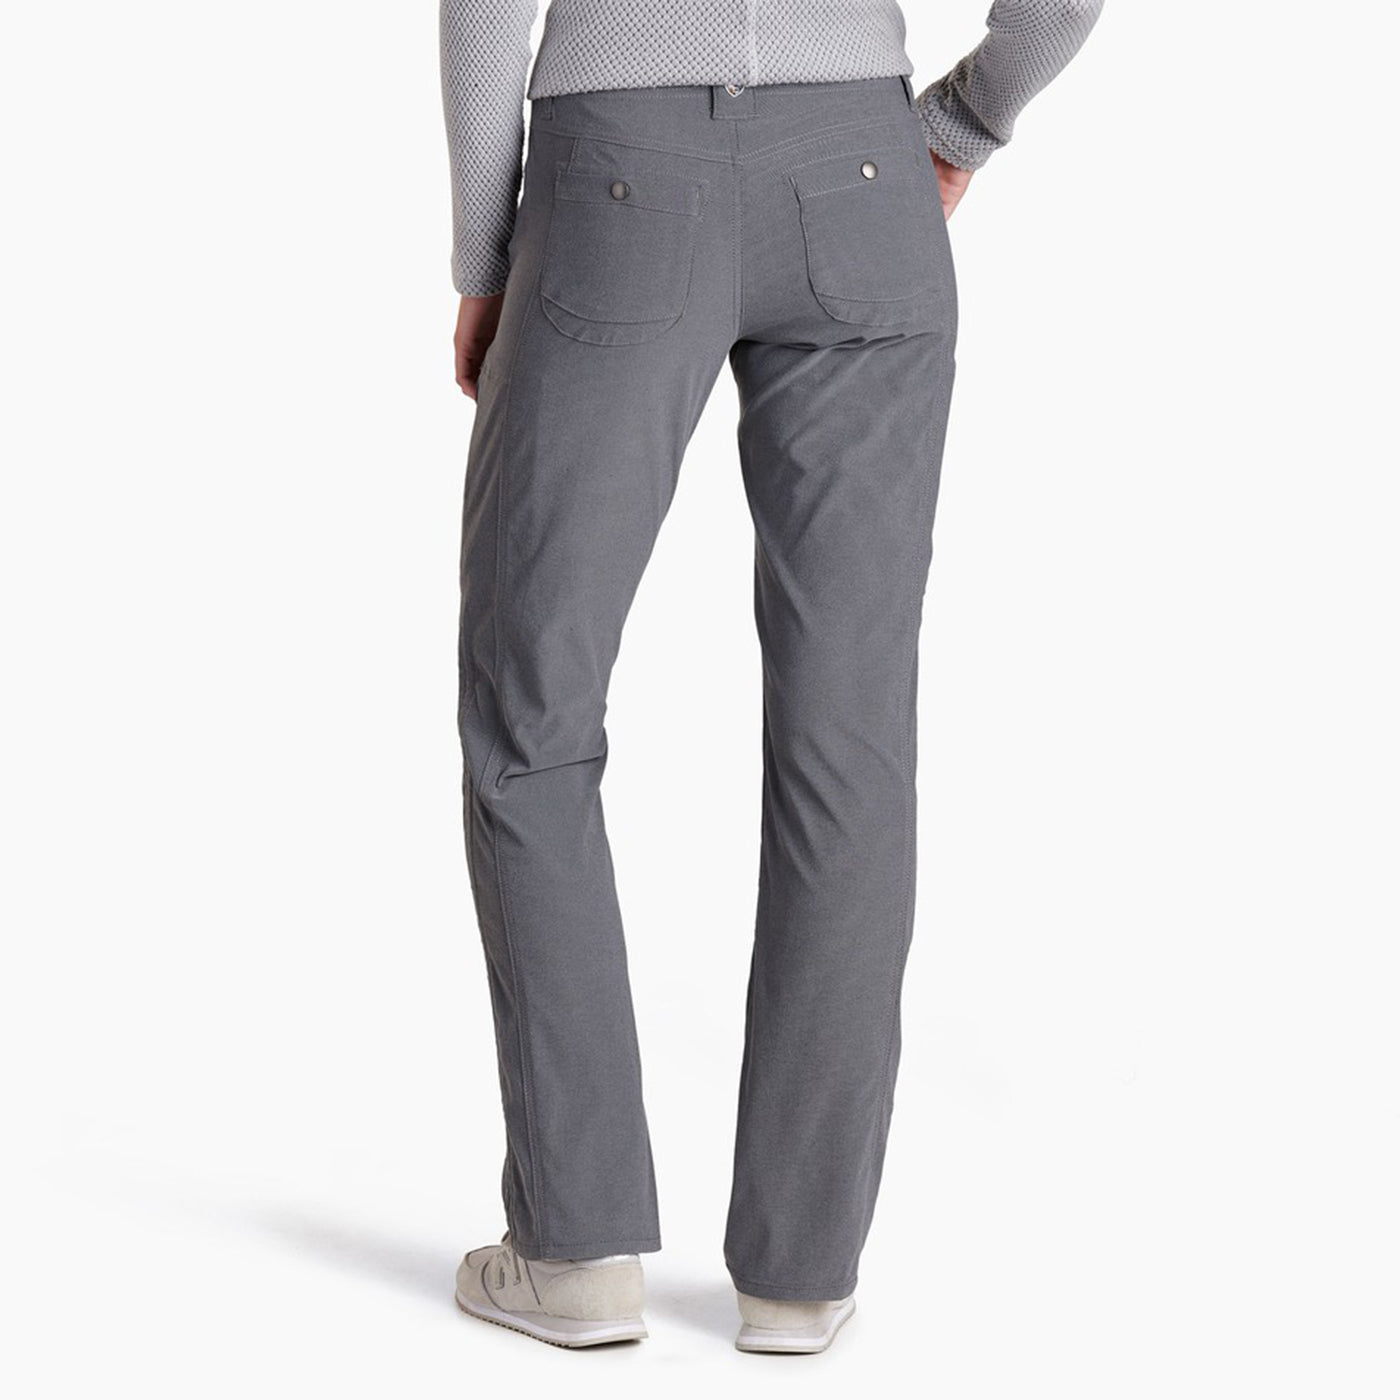 Kuhl Kontour Straight Pavement pants NEW womens 16 reg inseam gray grey